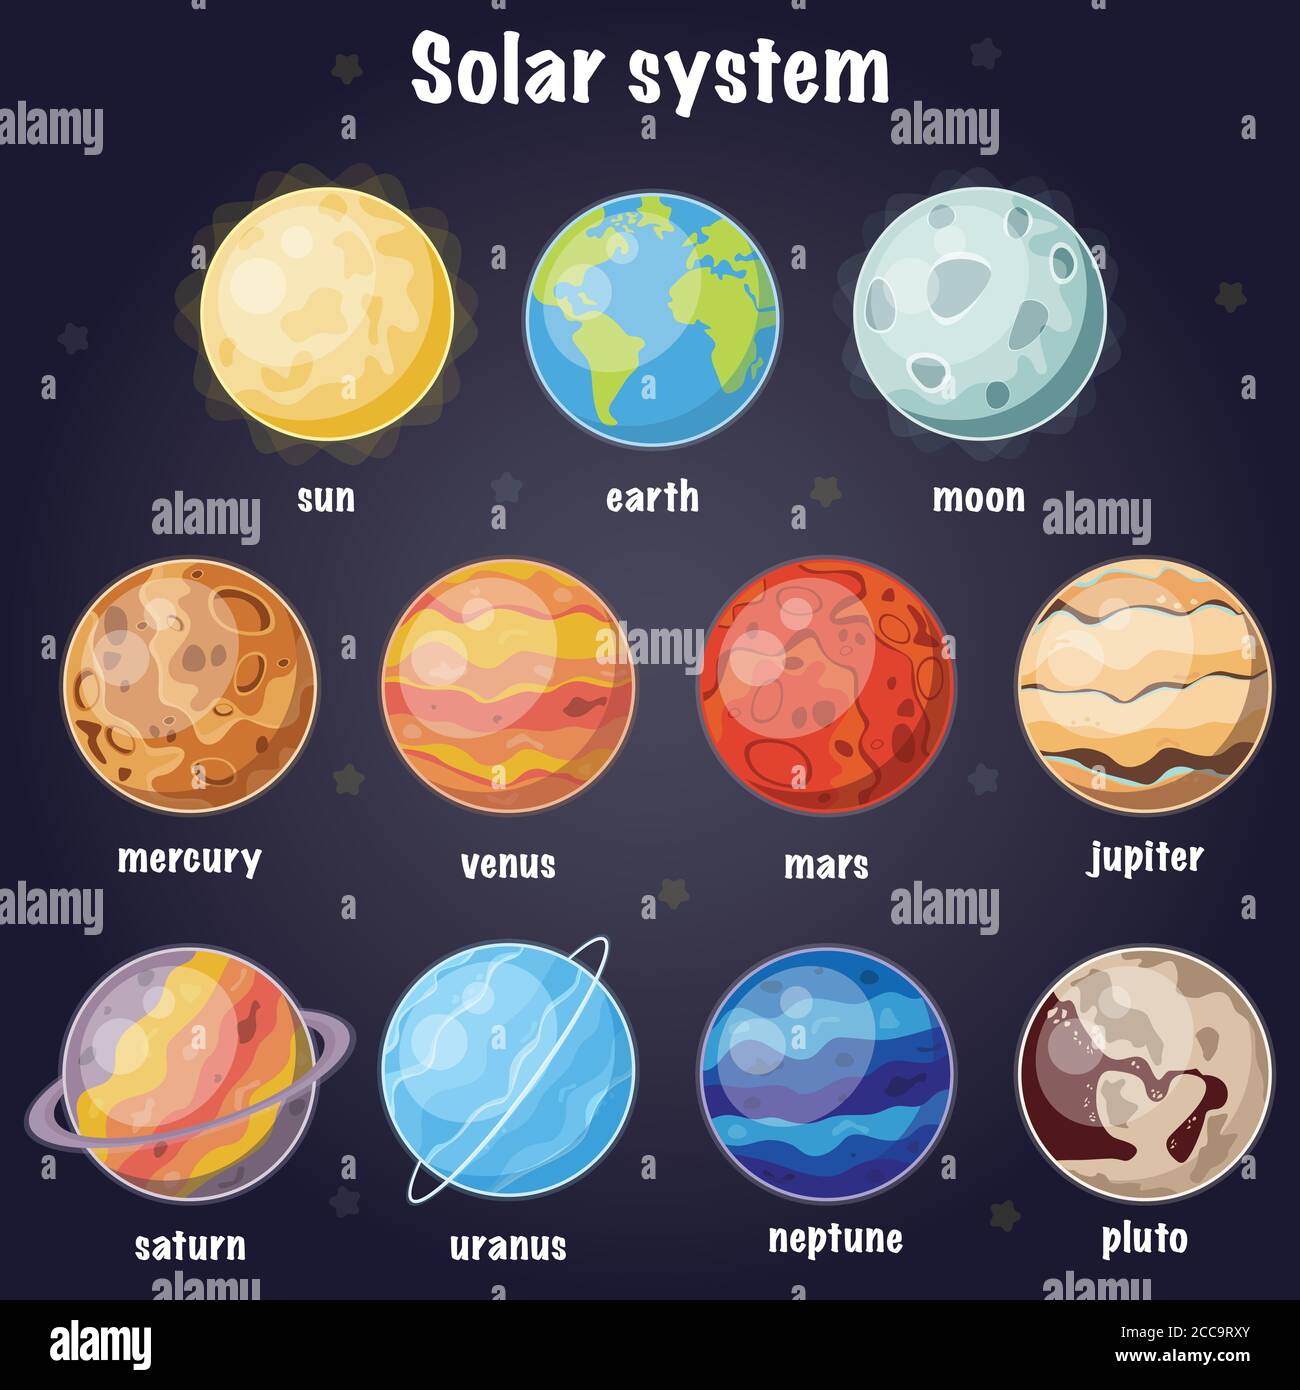 Cartoon solar system illustration poster. Vector illustration. Stock Vector